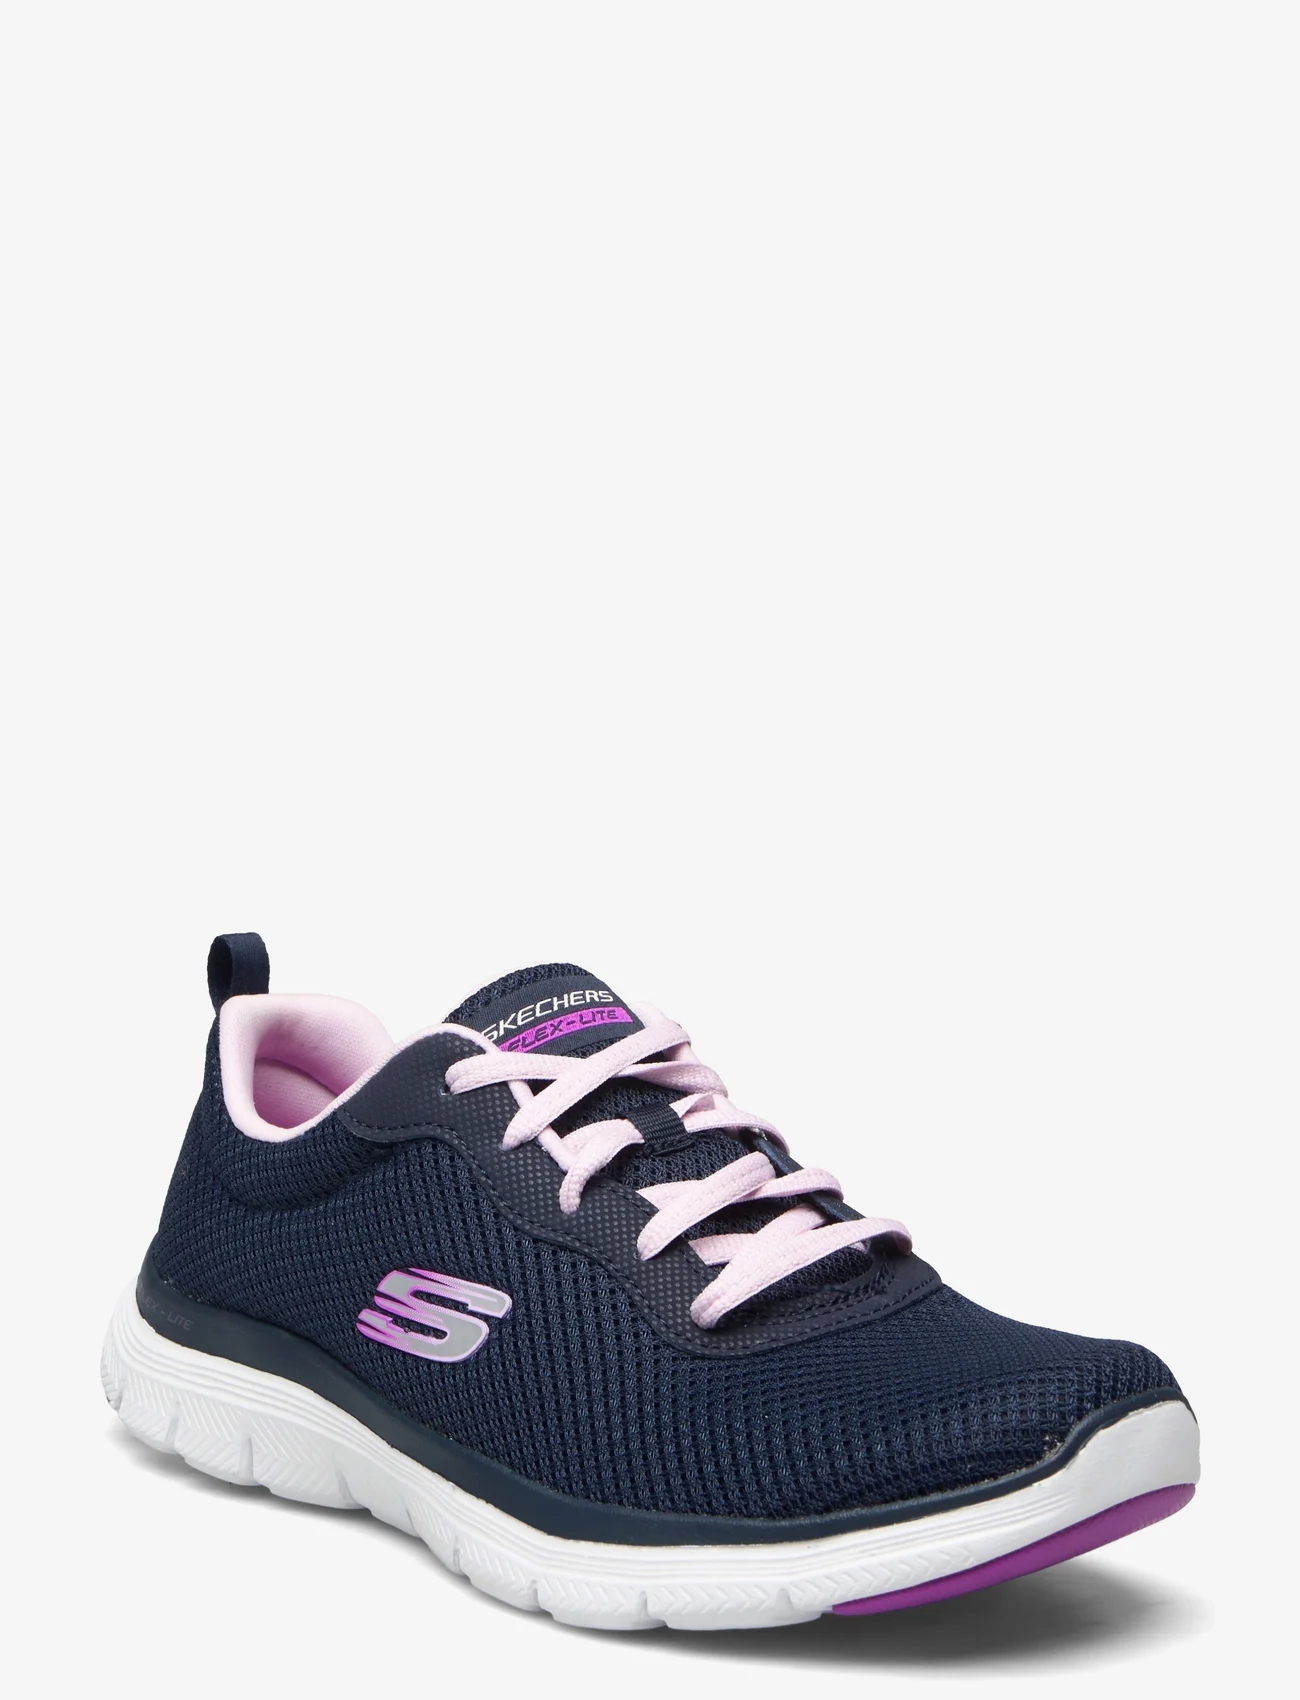 Skechers - Womens Flex Appeal 4.0 - Brilliant View - sneakers med lavt skaft - nvlv navy lavender - 0